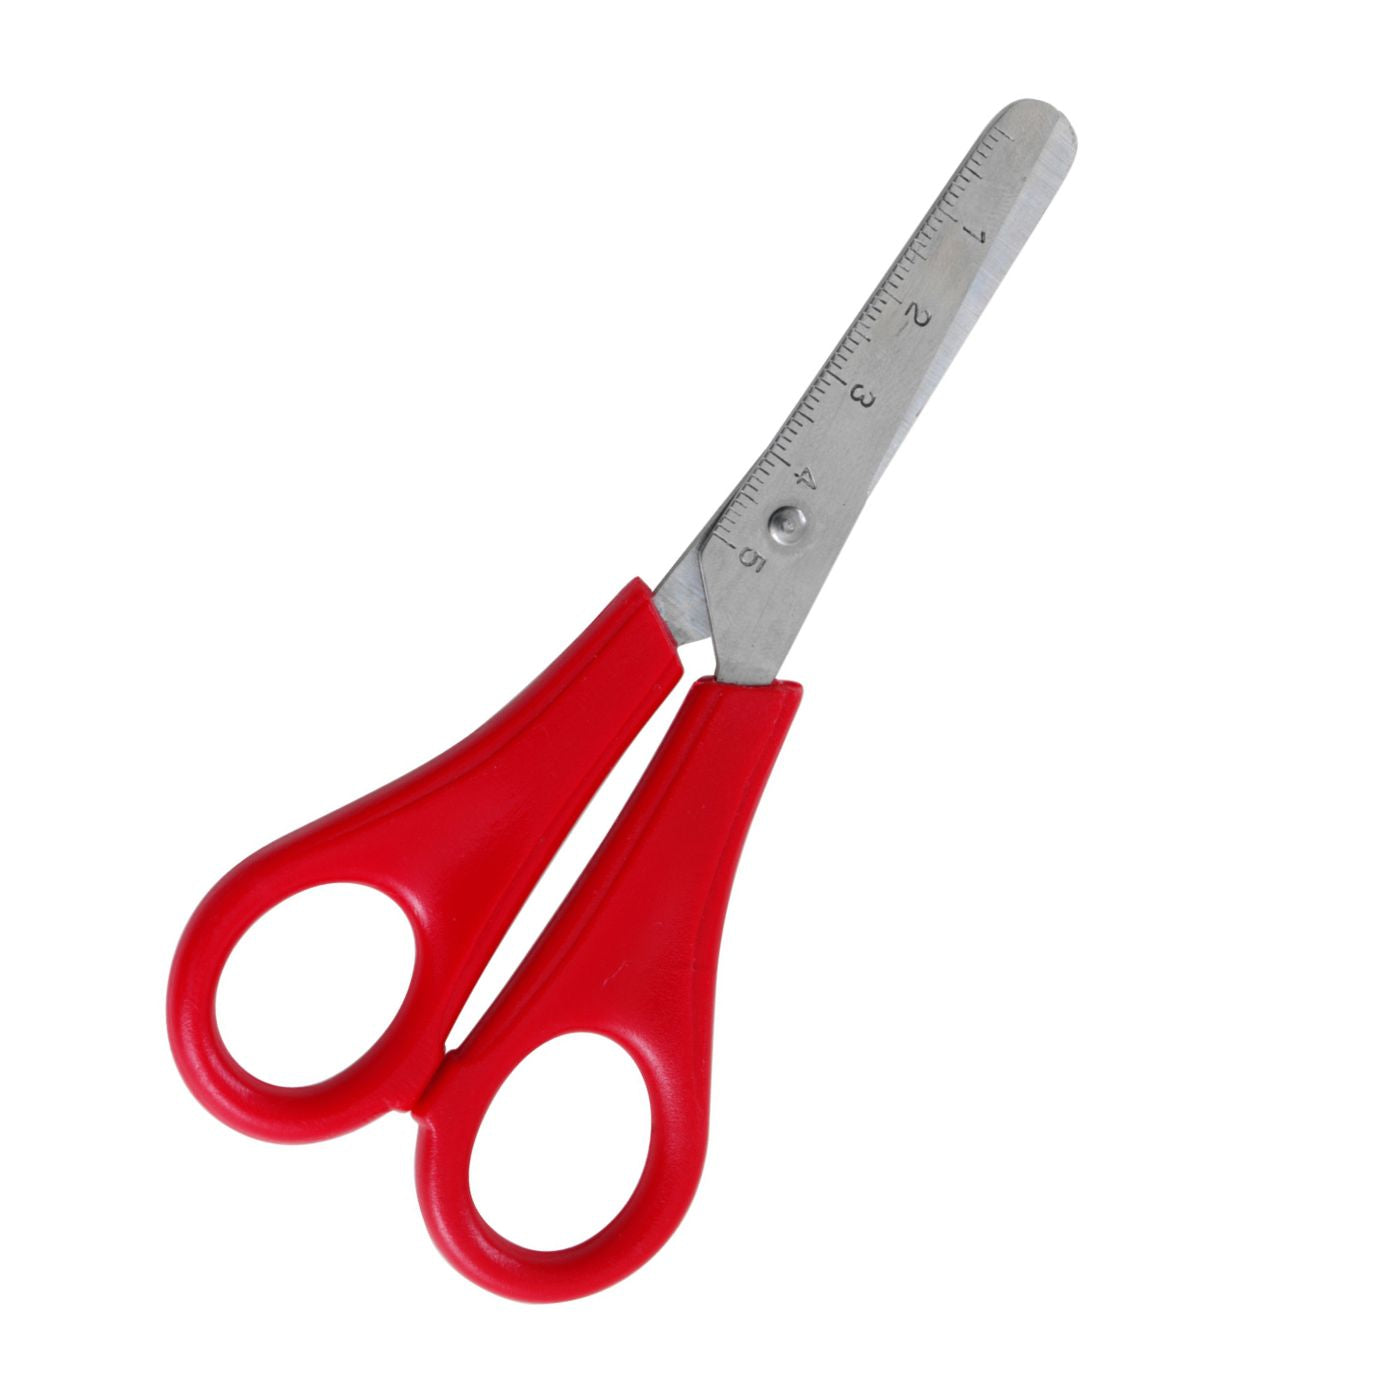 Celco School Scissors Graduated 5.2inch [13.3cm]